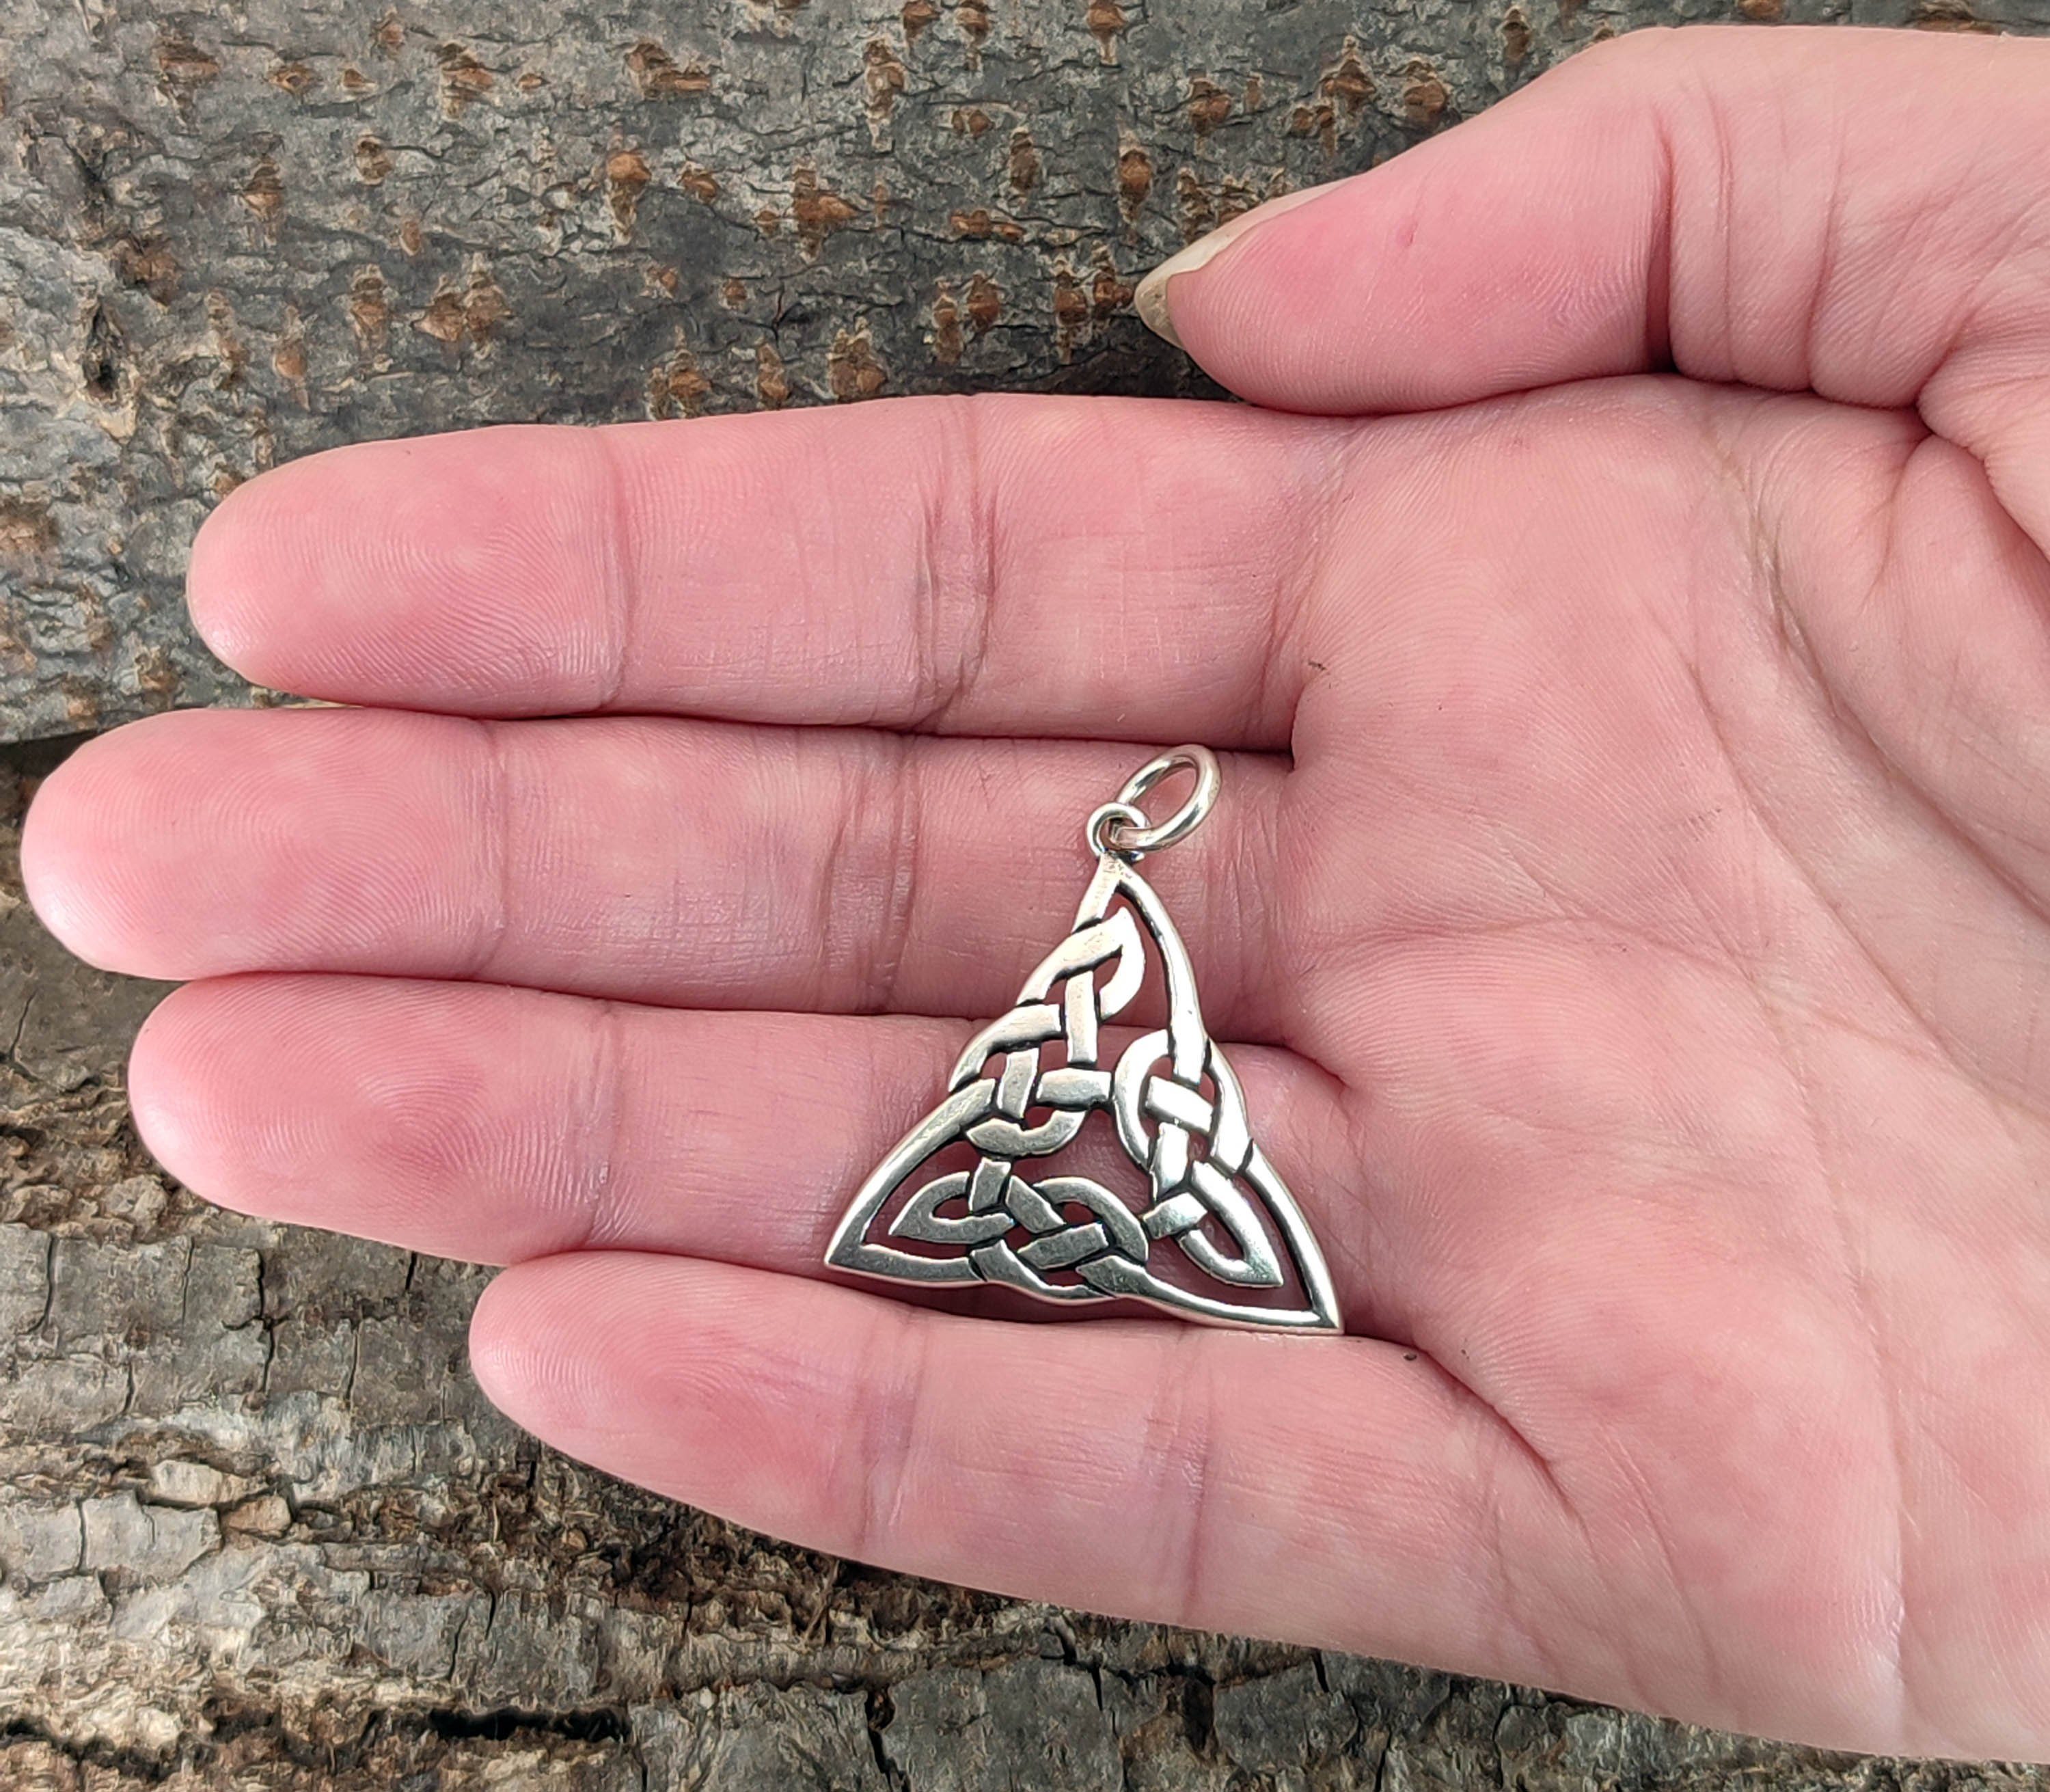 Silber of 925 Kiss Knoten Anhänger keltischer Leather Keltenknoten Kettenanhänger Dreieck